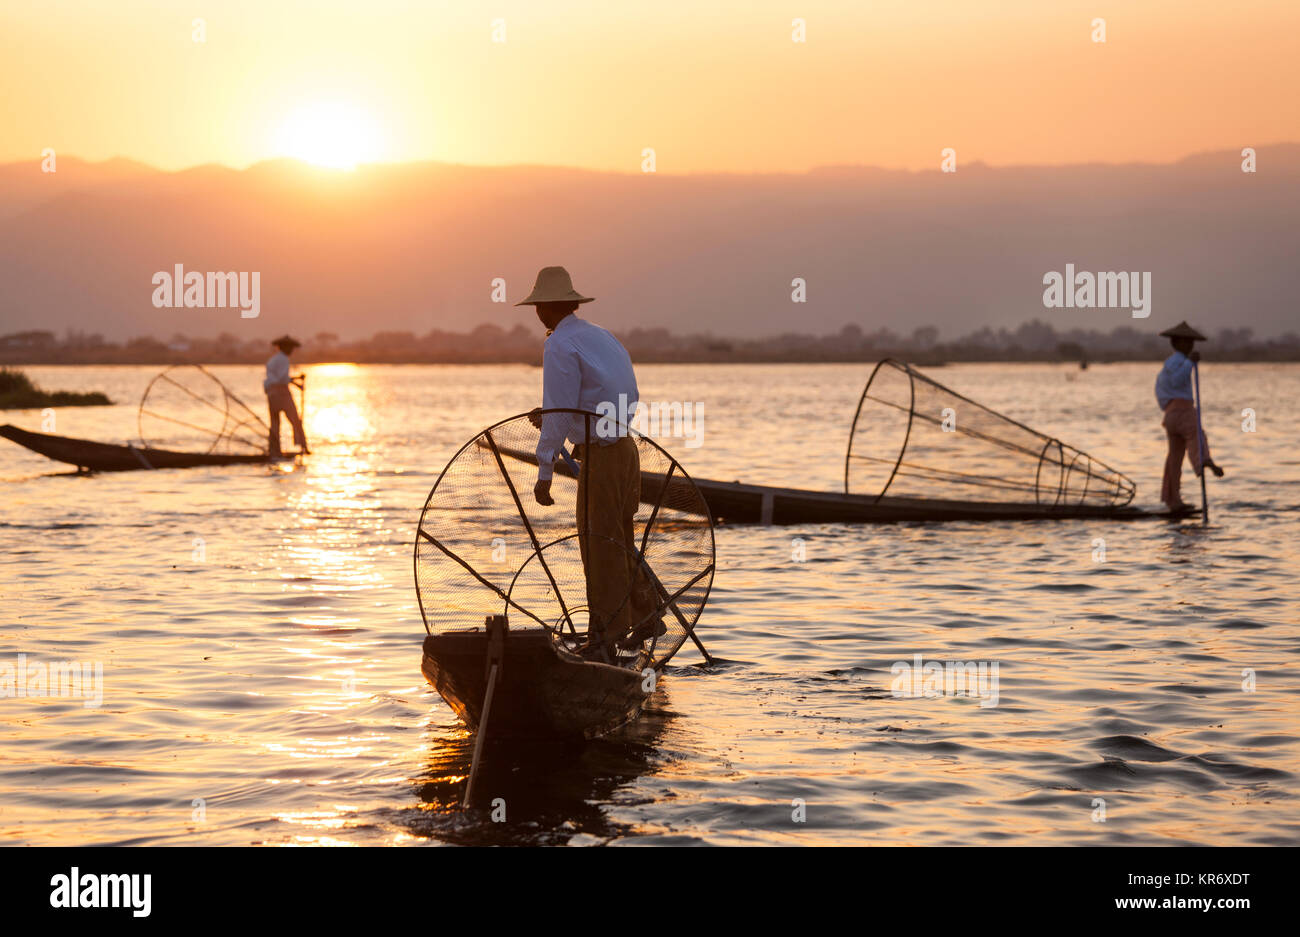 Pescadores tradicionales en un barco de pesca, sujetando el canasto, pesca en el lago al atardecer. Foto de stock